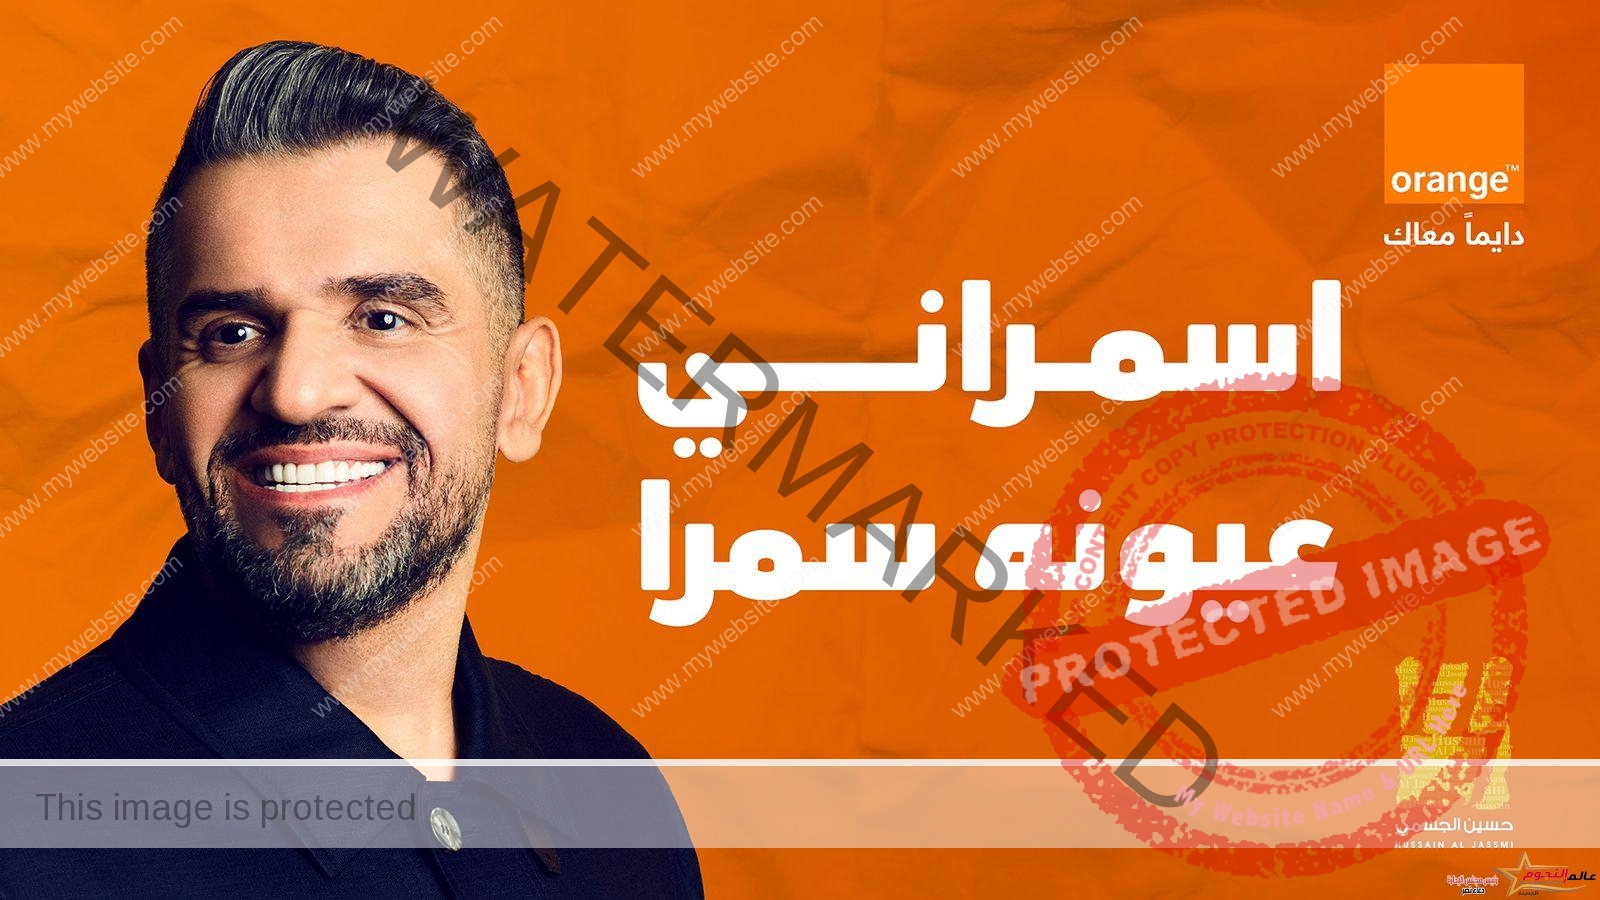 حسين الجسمي يلمس مشاعر المصريين بجديده الرمضاني "اسمراني عيونه سمرا"